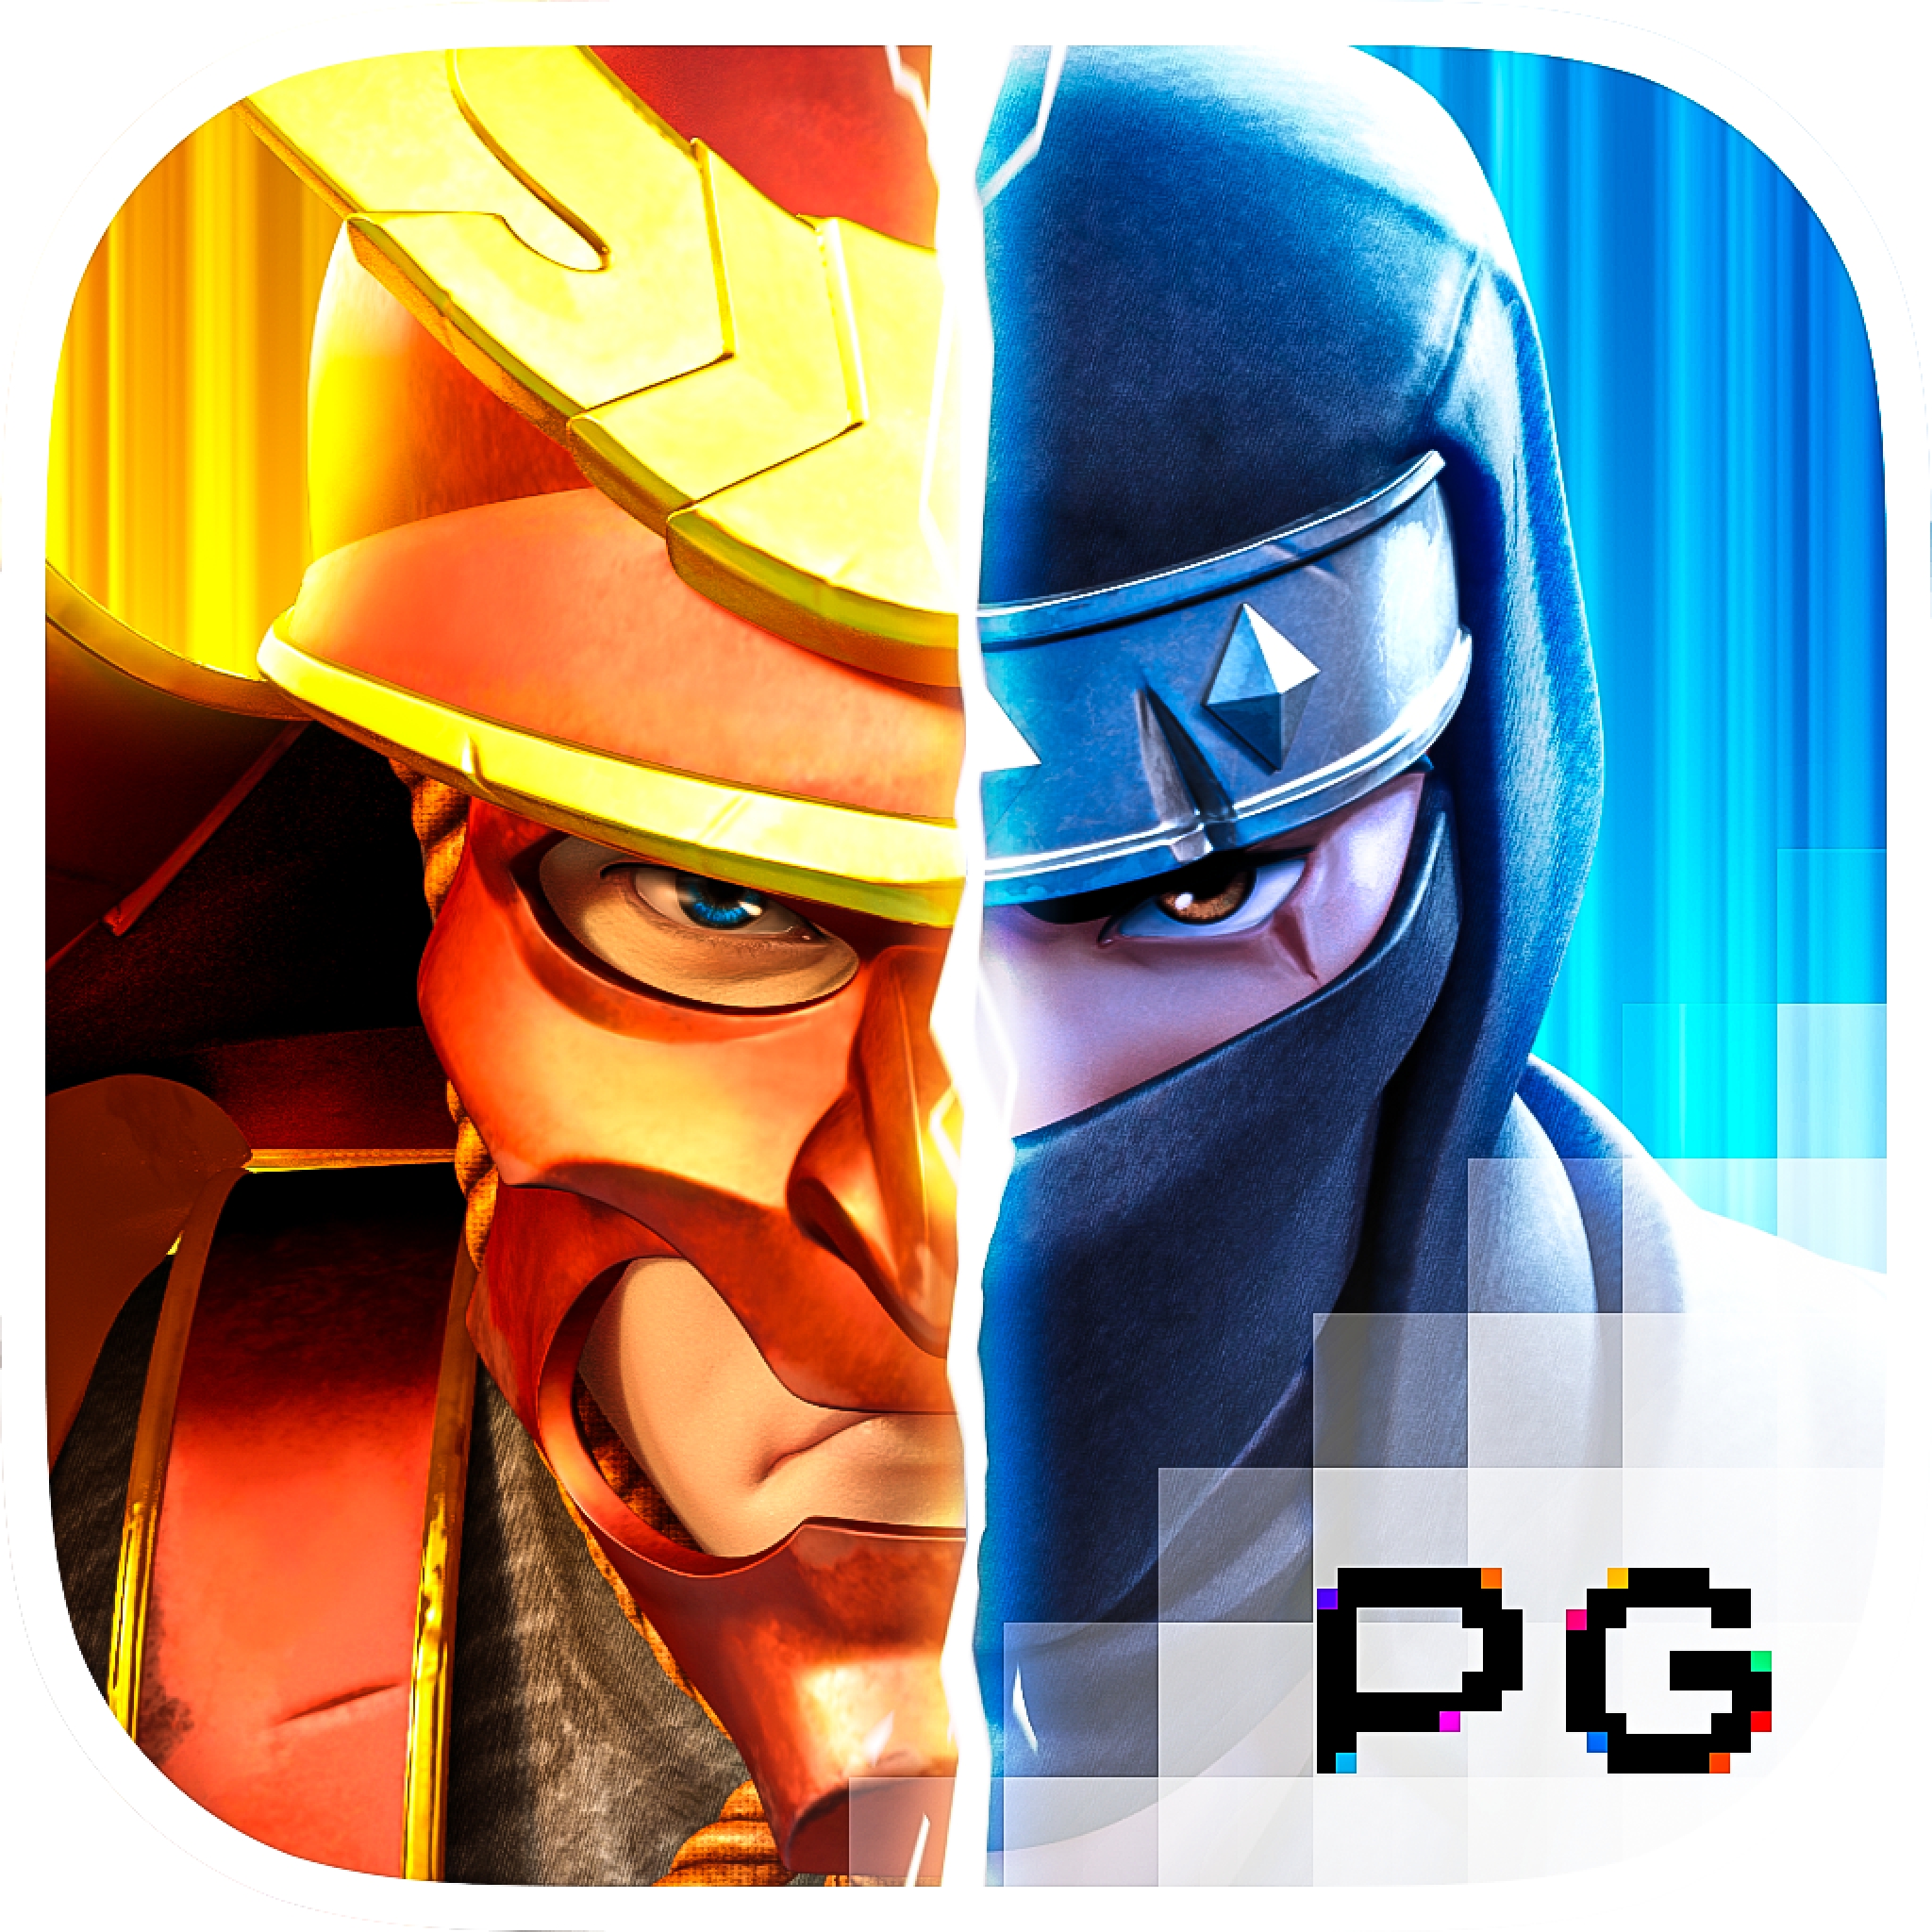 Ninja vs Samurai demo